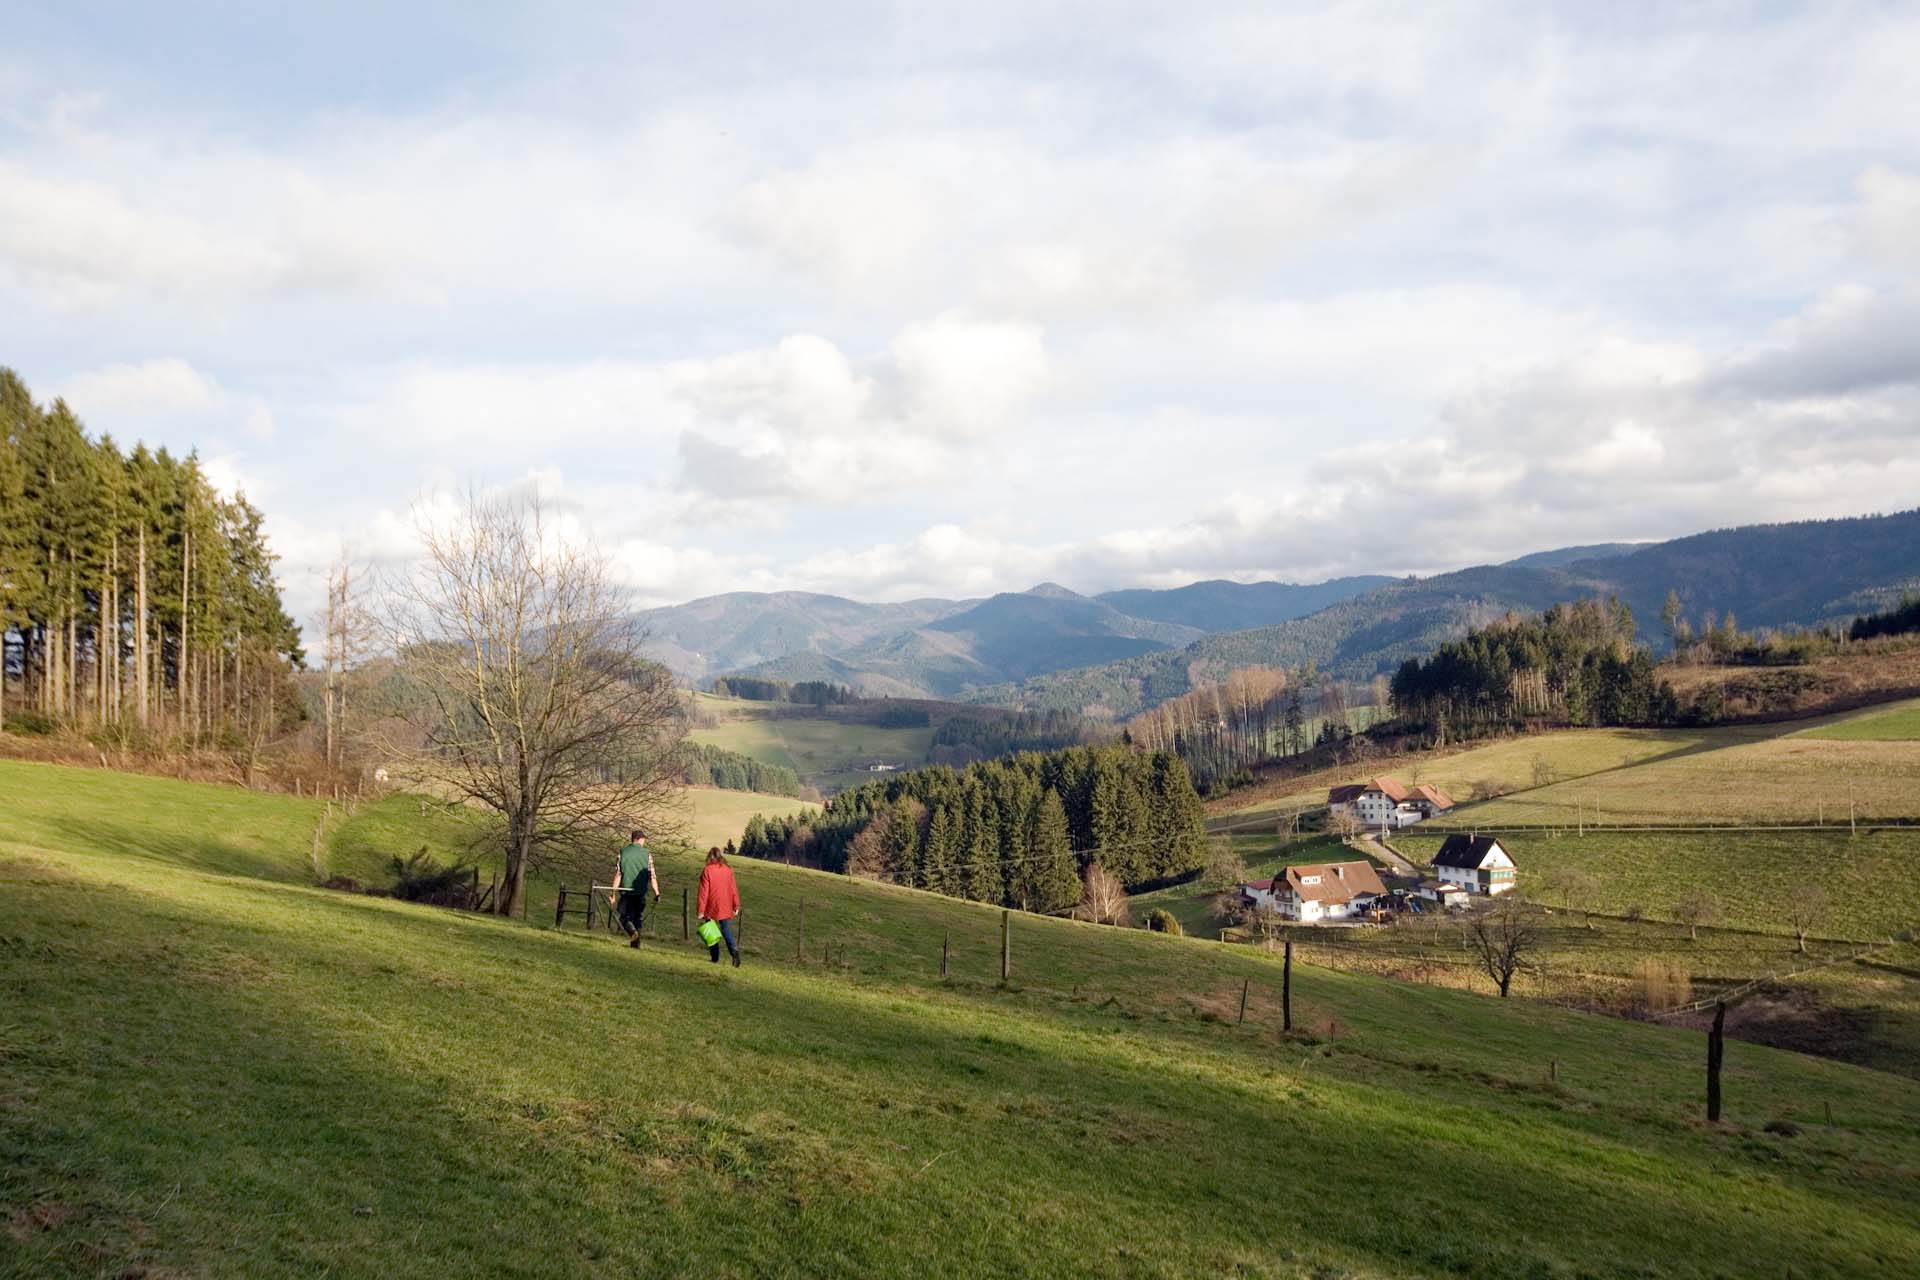 Für das Freihalten der Hochflächen im Schwarzwald gibt es EU-Subventionen